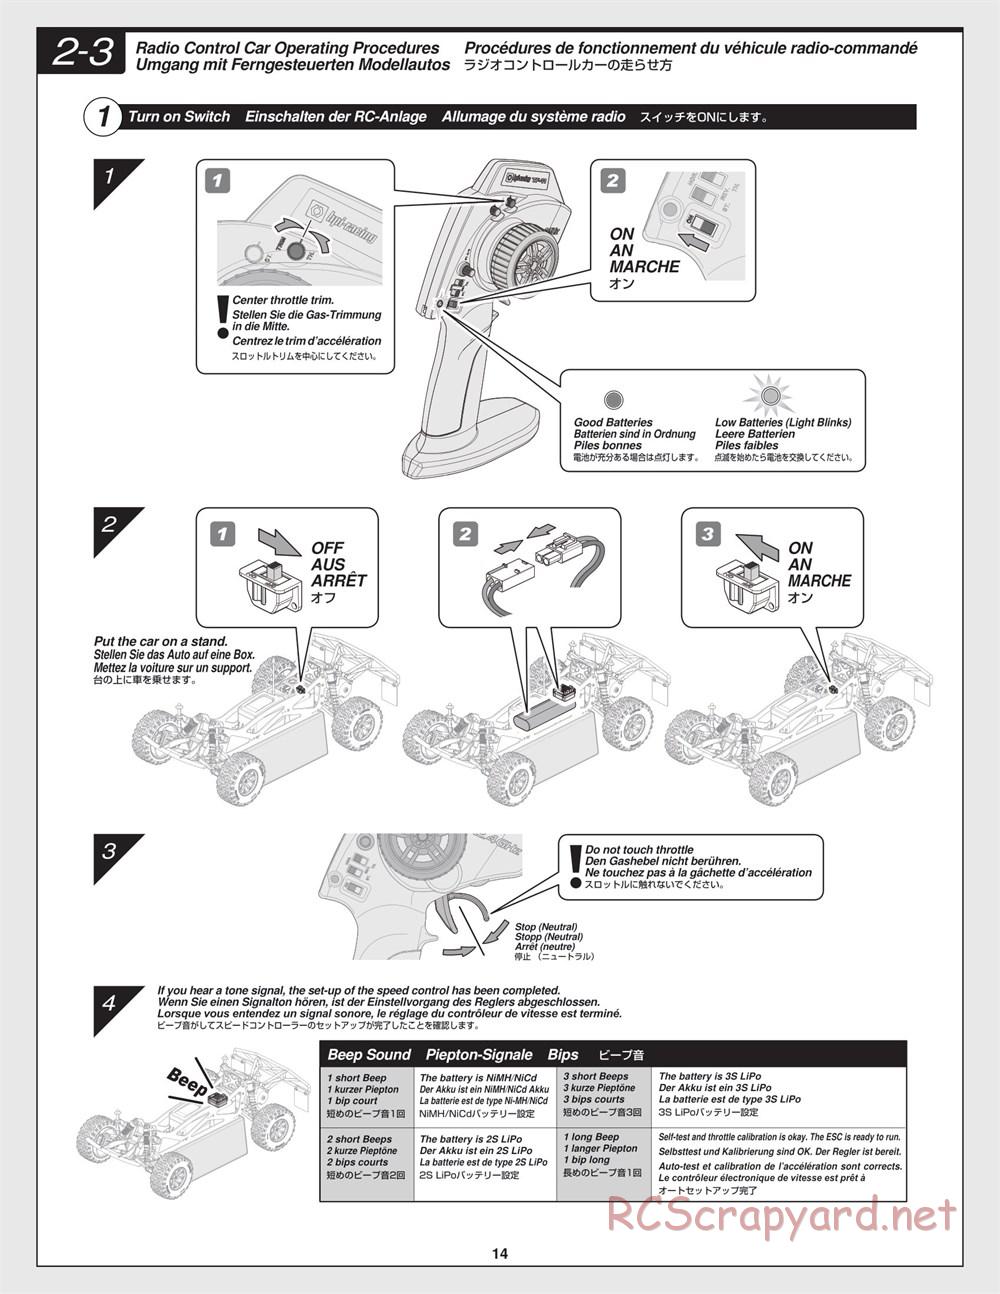 HPI - Jumpshot SC - Manual - Page 14